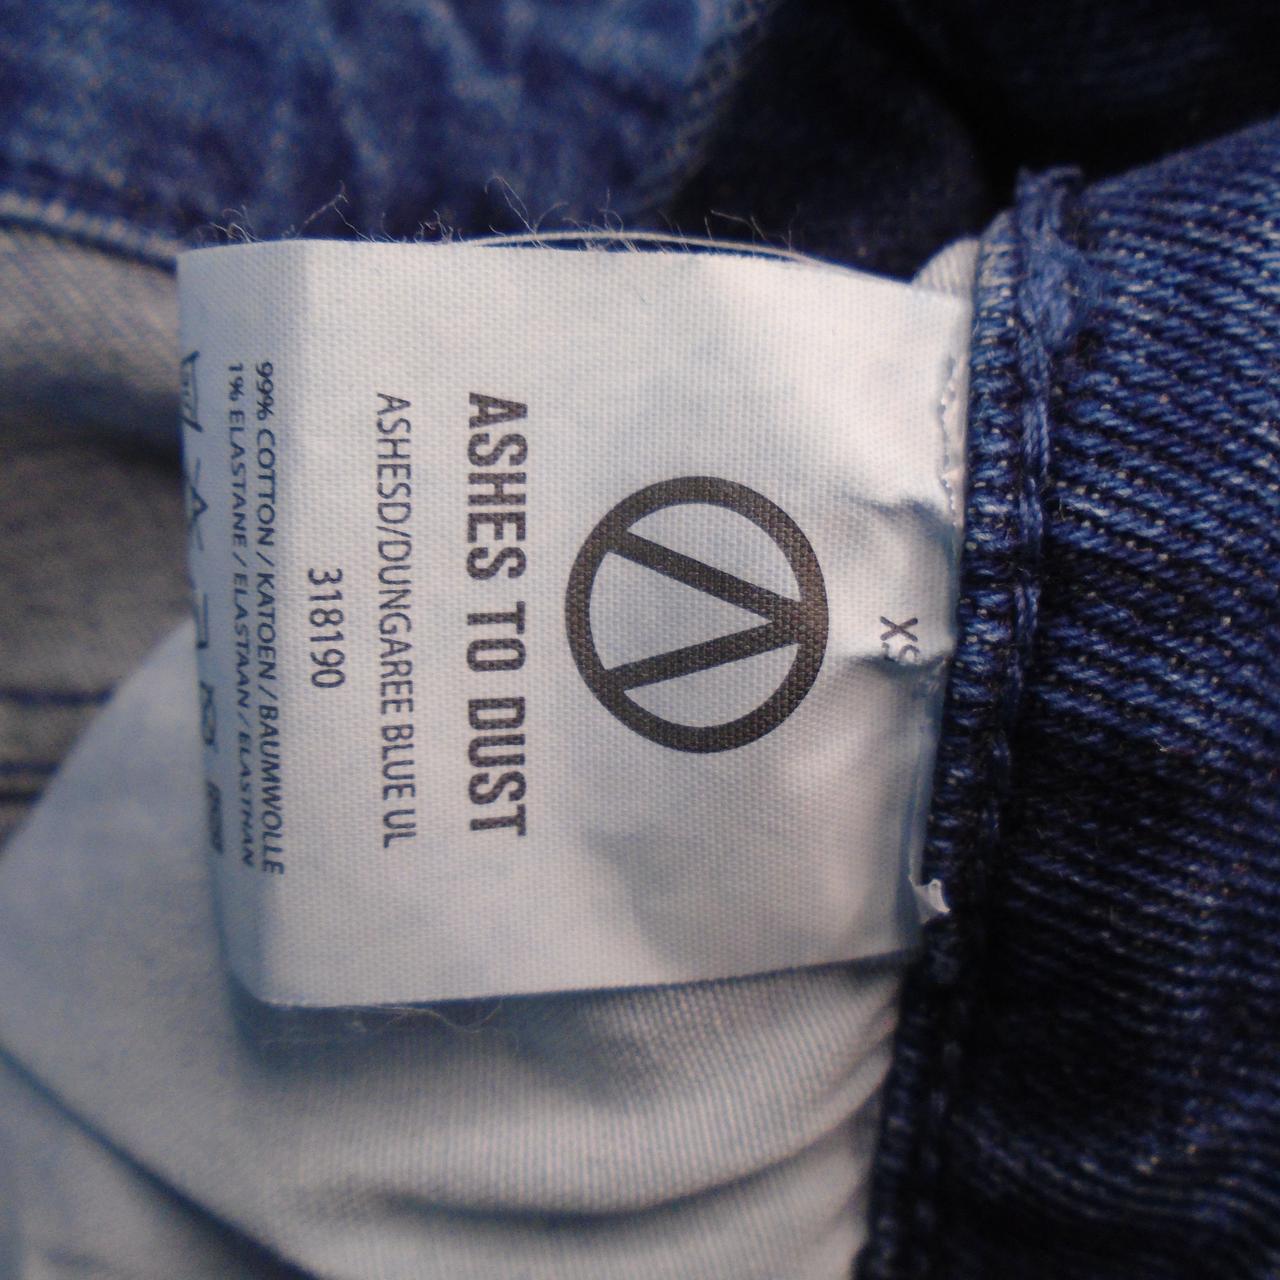 Jeans Femme Ashes To Dust. Bleu. XS. Neuf sans étiquette